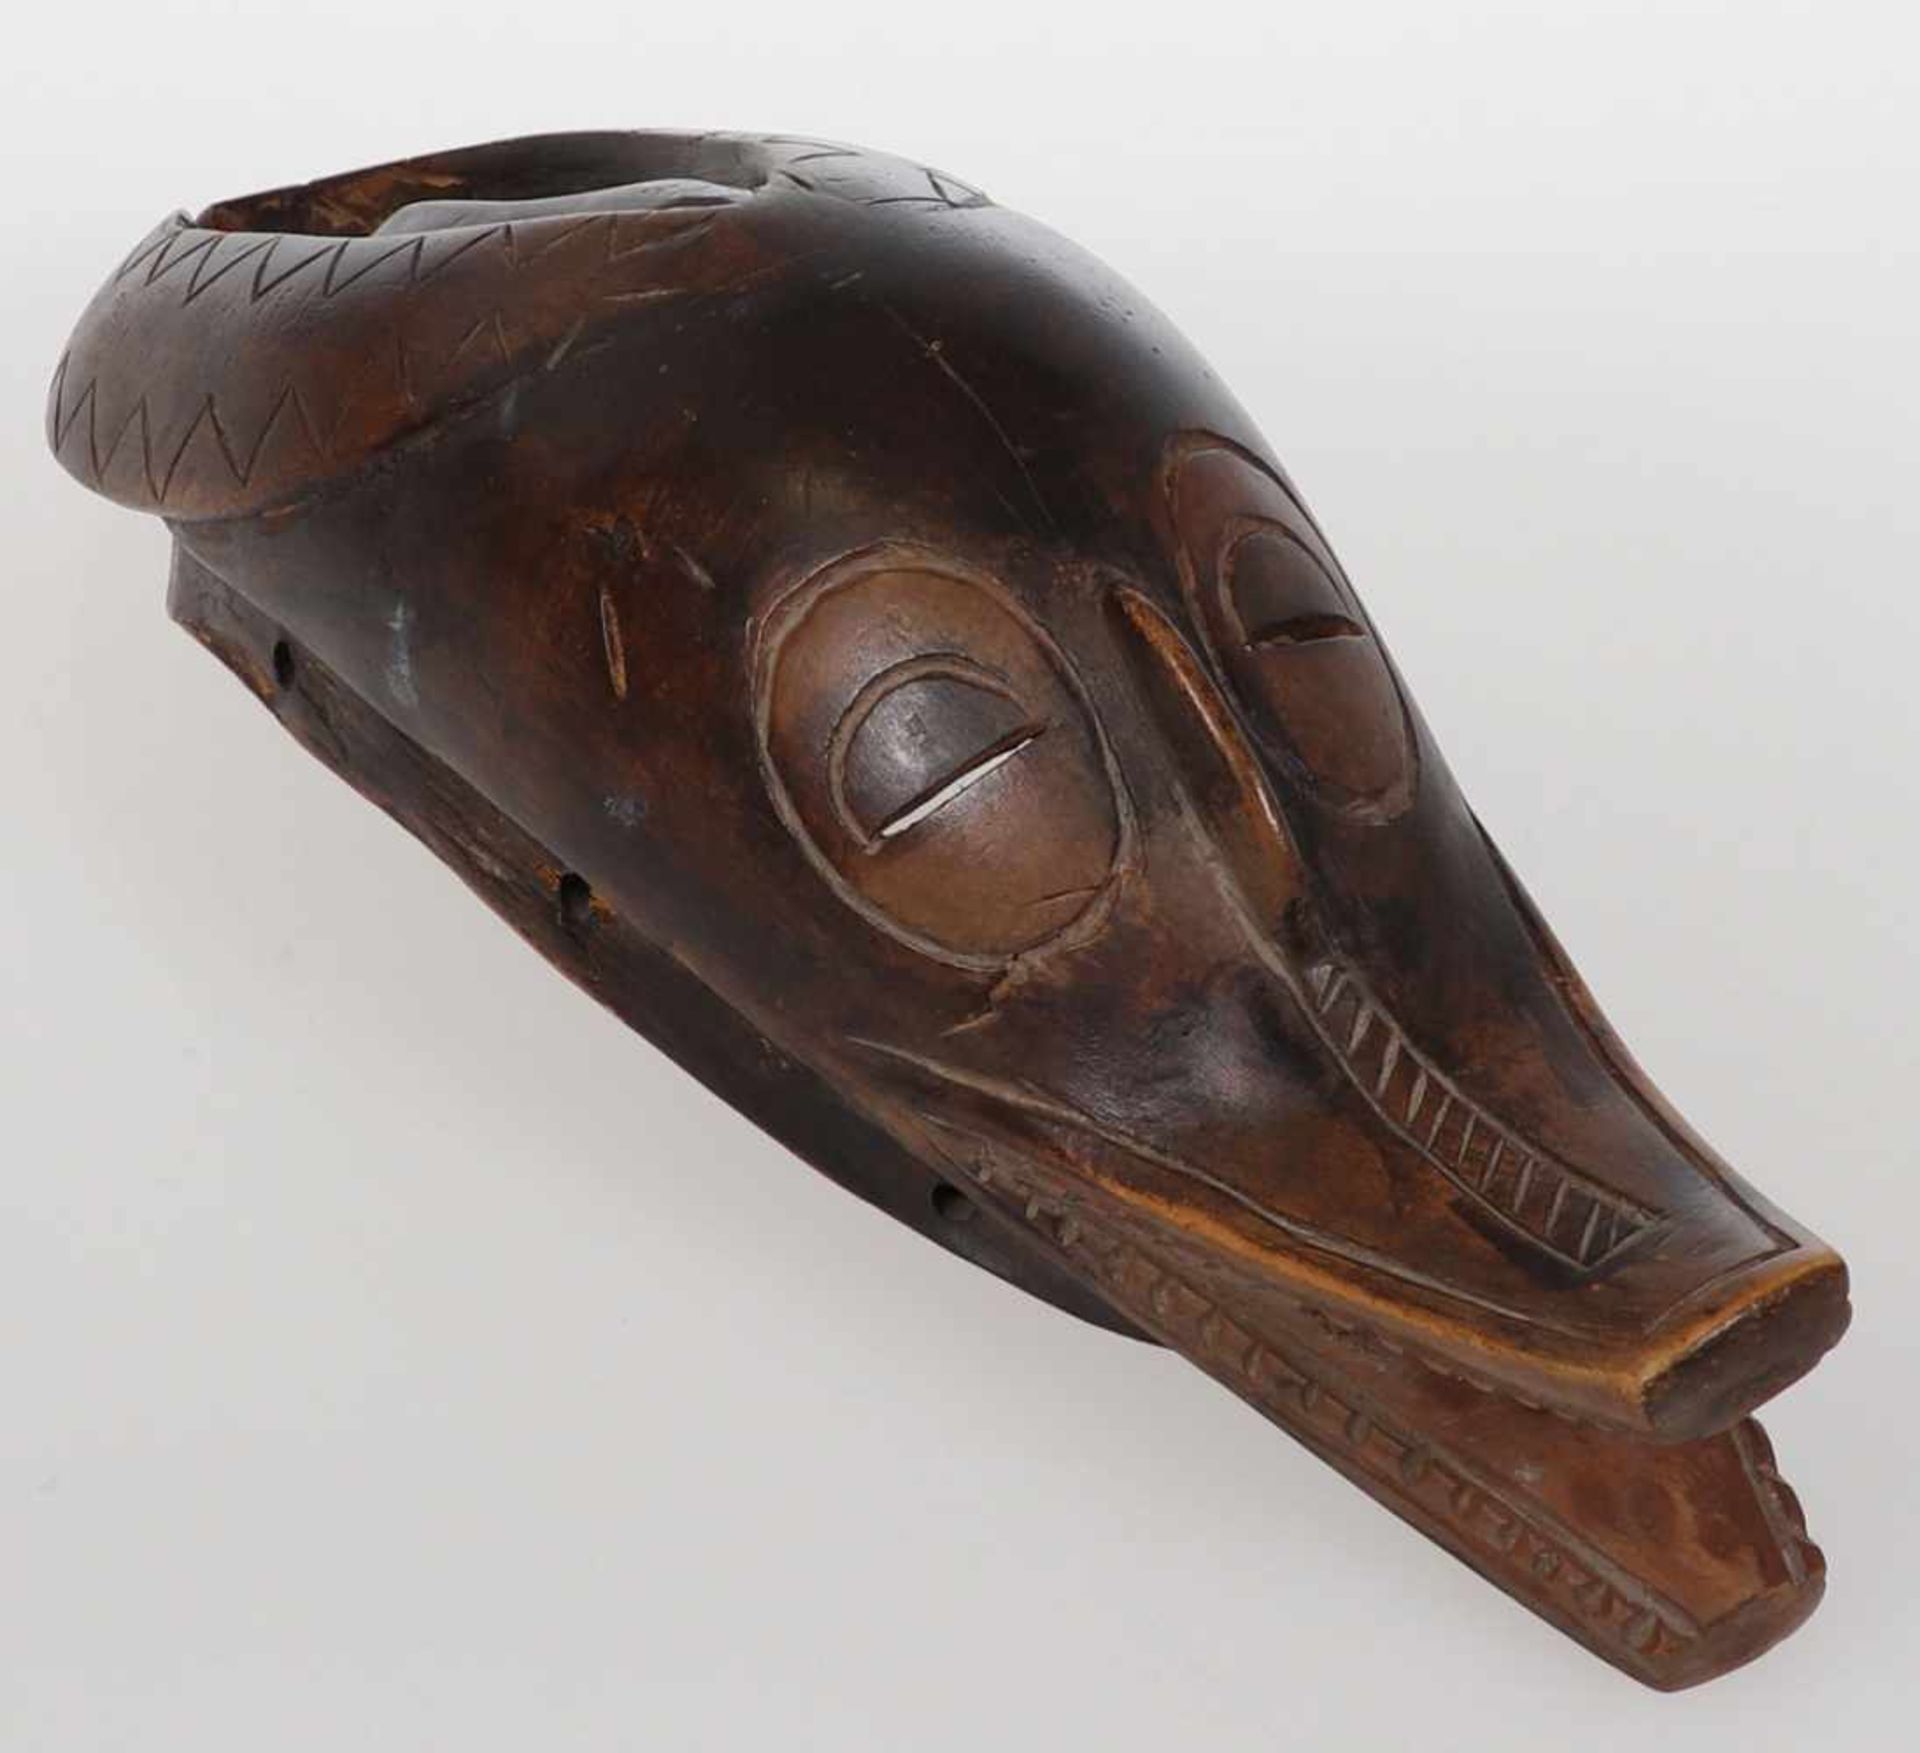 Guro MaskeElfenbeinküste. Holz, geschnitzt. H. 36 cm. Antilopenmaske.- - -22.00 % buyer's premium on